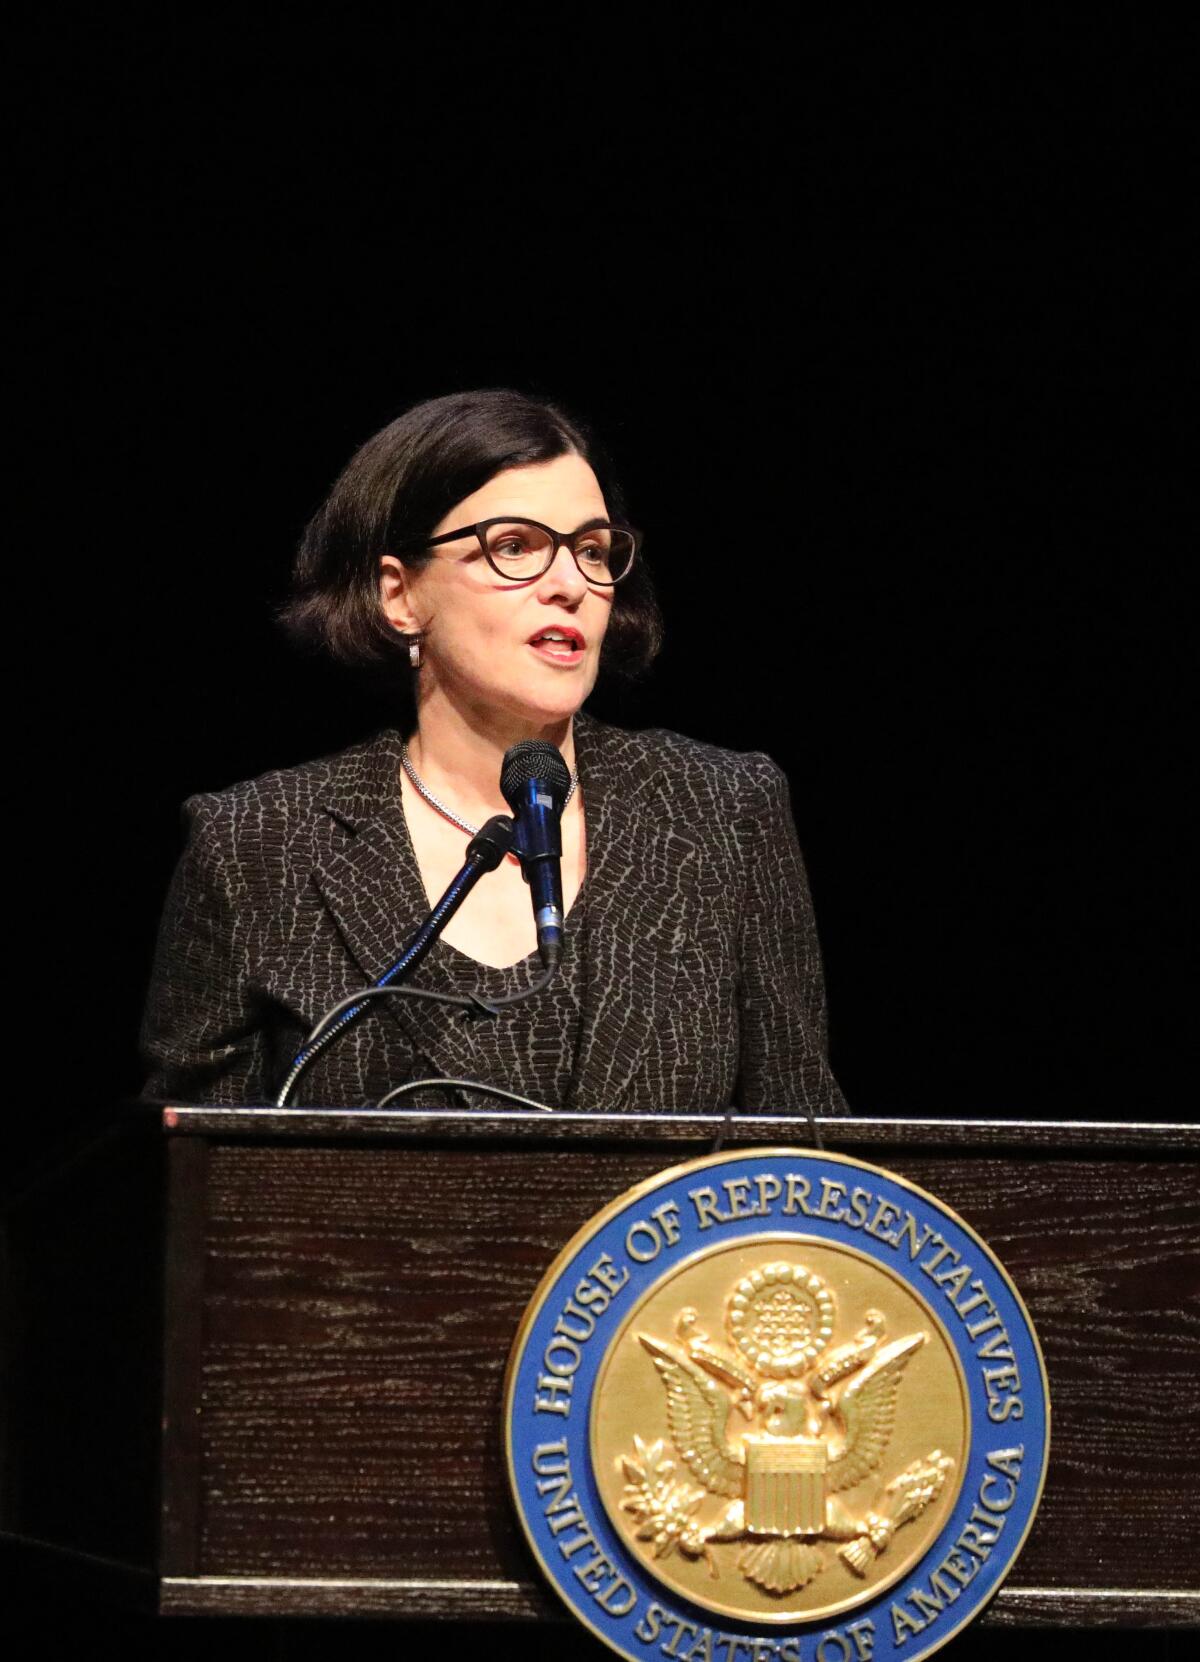 Katherine Feinstein, daughter of Sen. Dianne Feinstein, photographed in 2019.